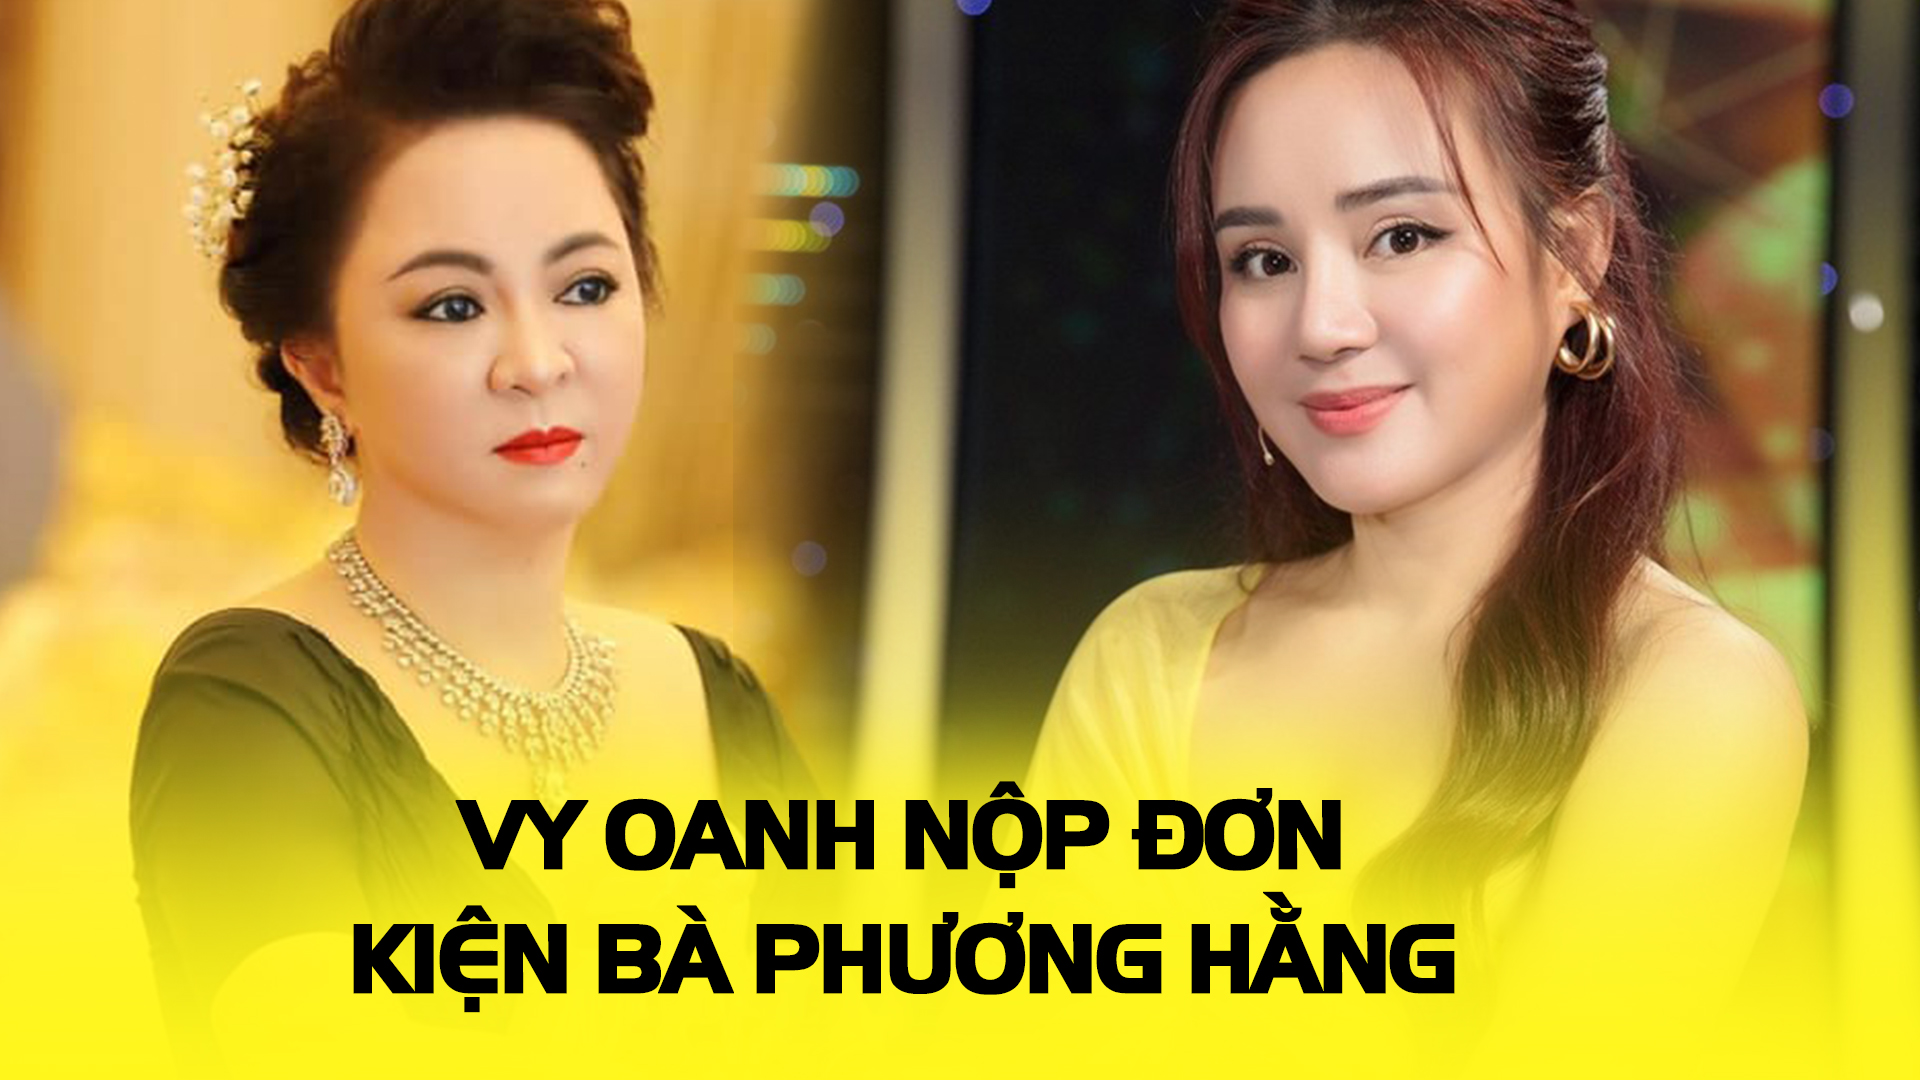 Nóng: Bộ Công an thông tin mới về vụ án liên quan ca sĩ Vy Oanh và bà Phương Hằng - Ảnh 2